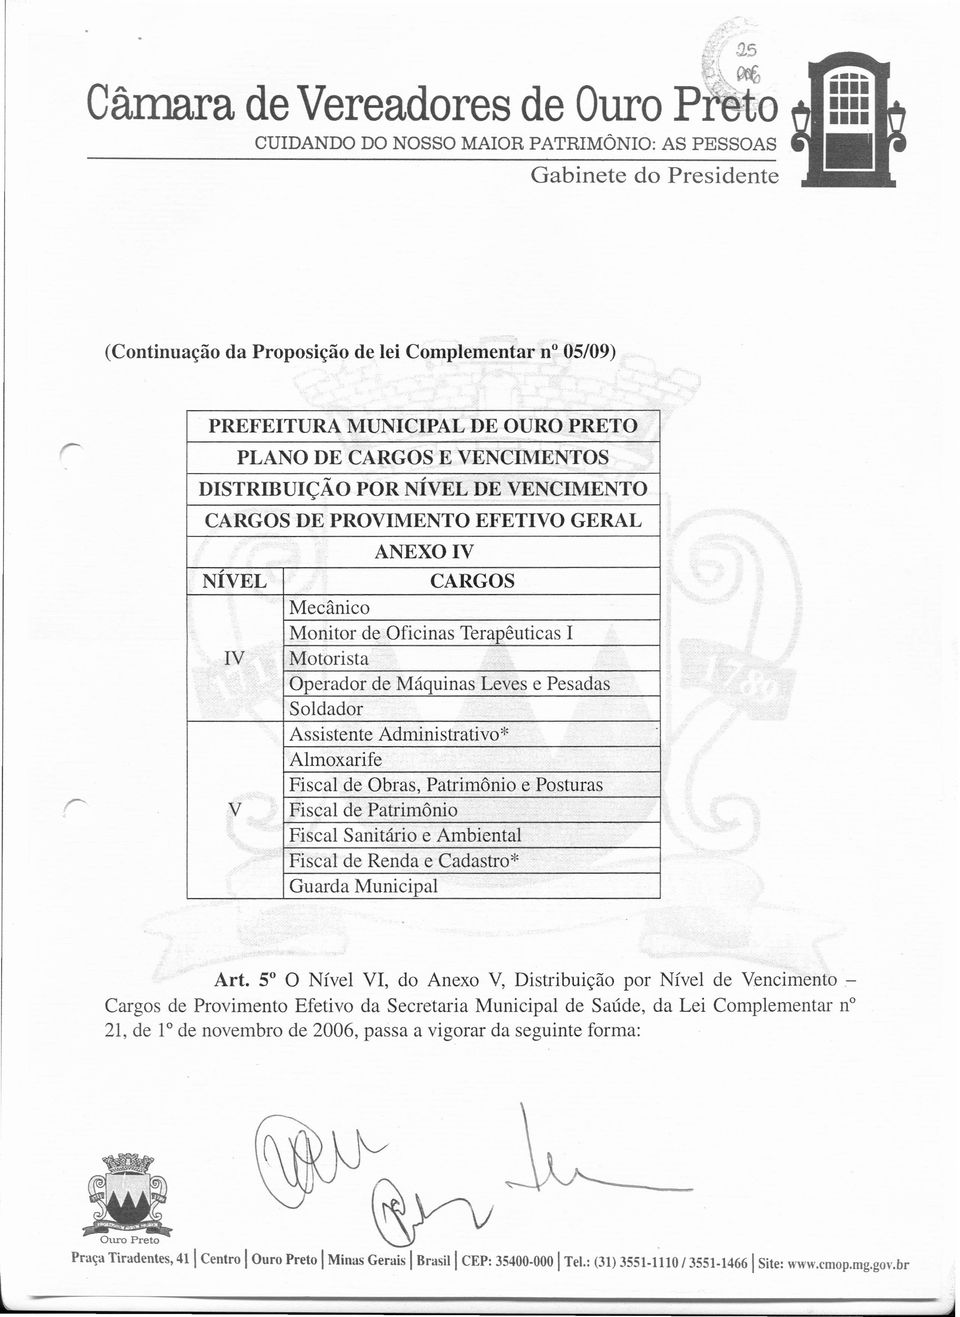 Posturas Fiscal de Patrimônio Fiscal Sanitário e Ambiental Fiscal de Renda e Cadastro" Guarda Municipal Art.